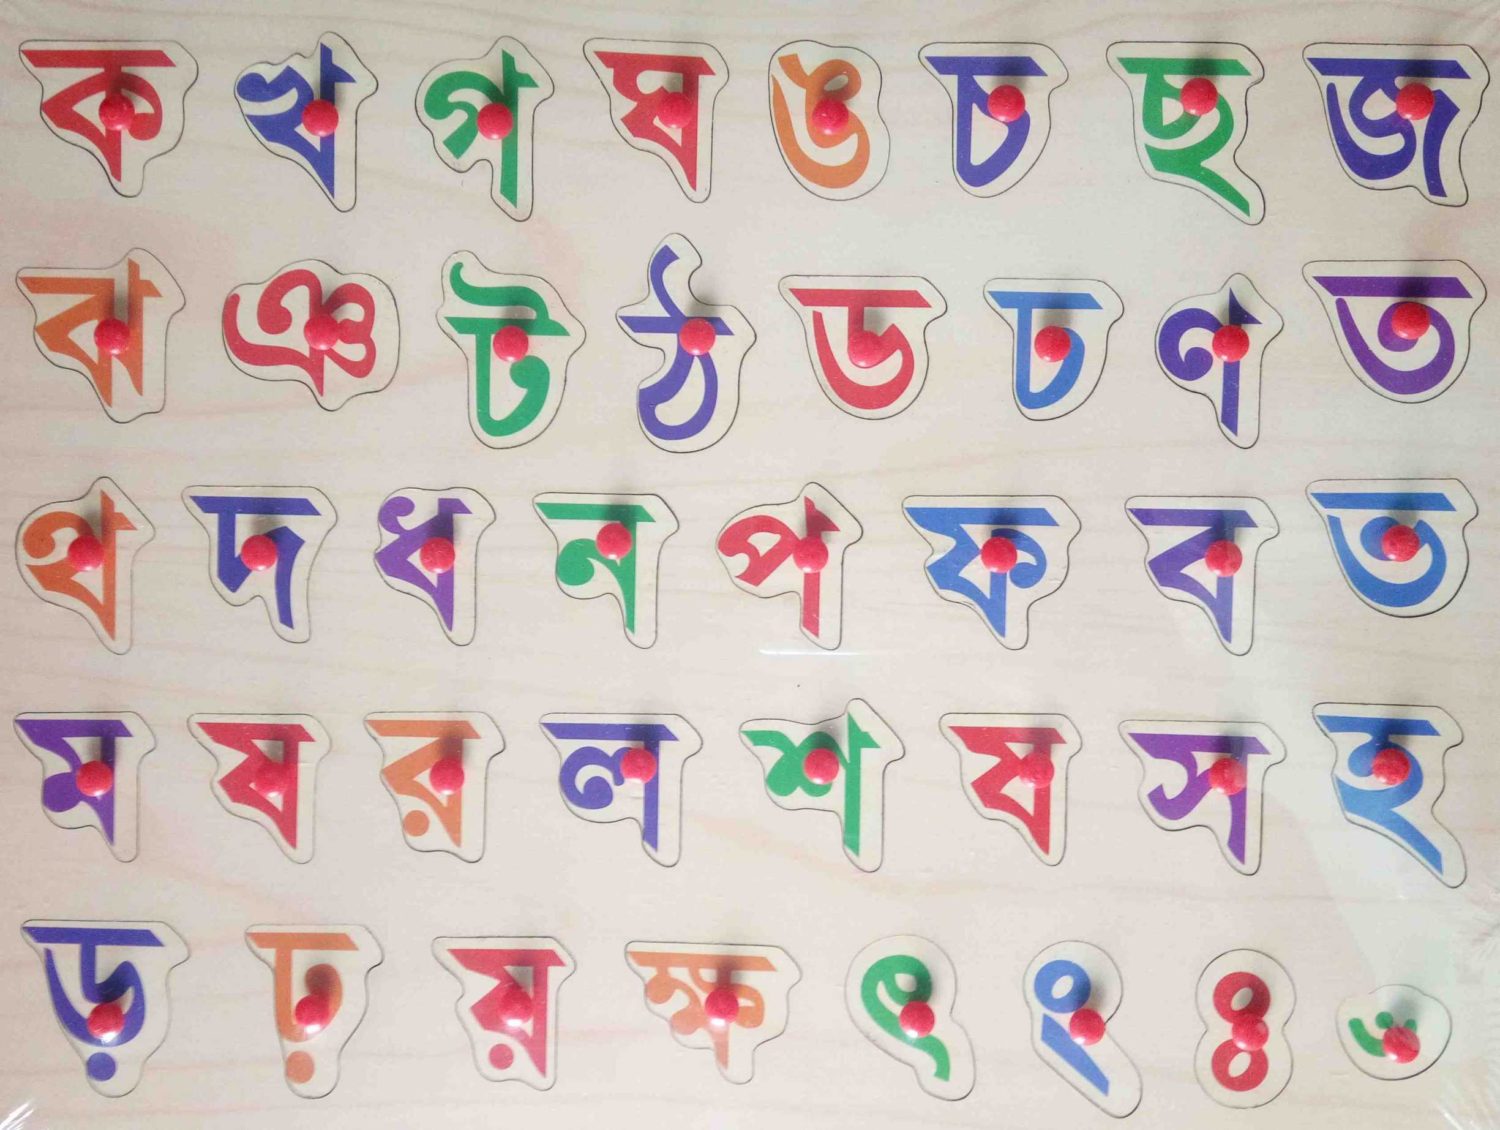 colorful bengali alphabets with english translation